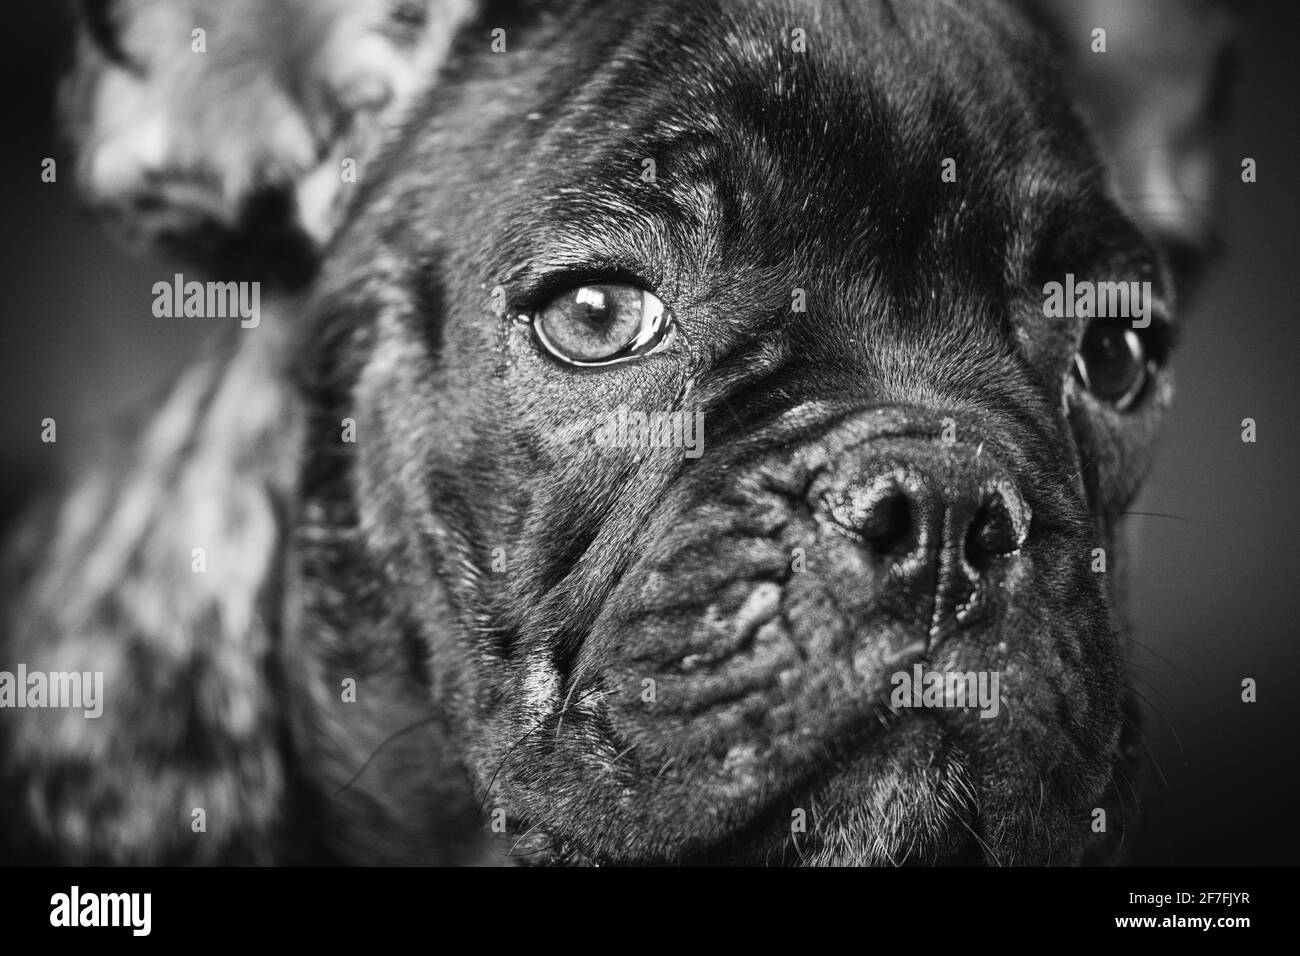 Nahaufnahme Porträt Des Jungen Schwarzen Französischen Bulldoggen-Hundes Puppy. Lustige Hund Baby Mit Schönen Schwarzen Schnauzenaugen Bulldog Welpen Hund. Entzückende Traurige Bulldogge Stockfoto